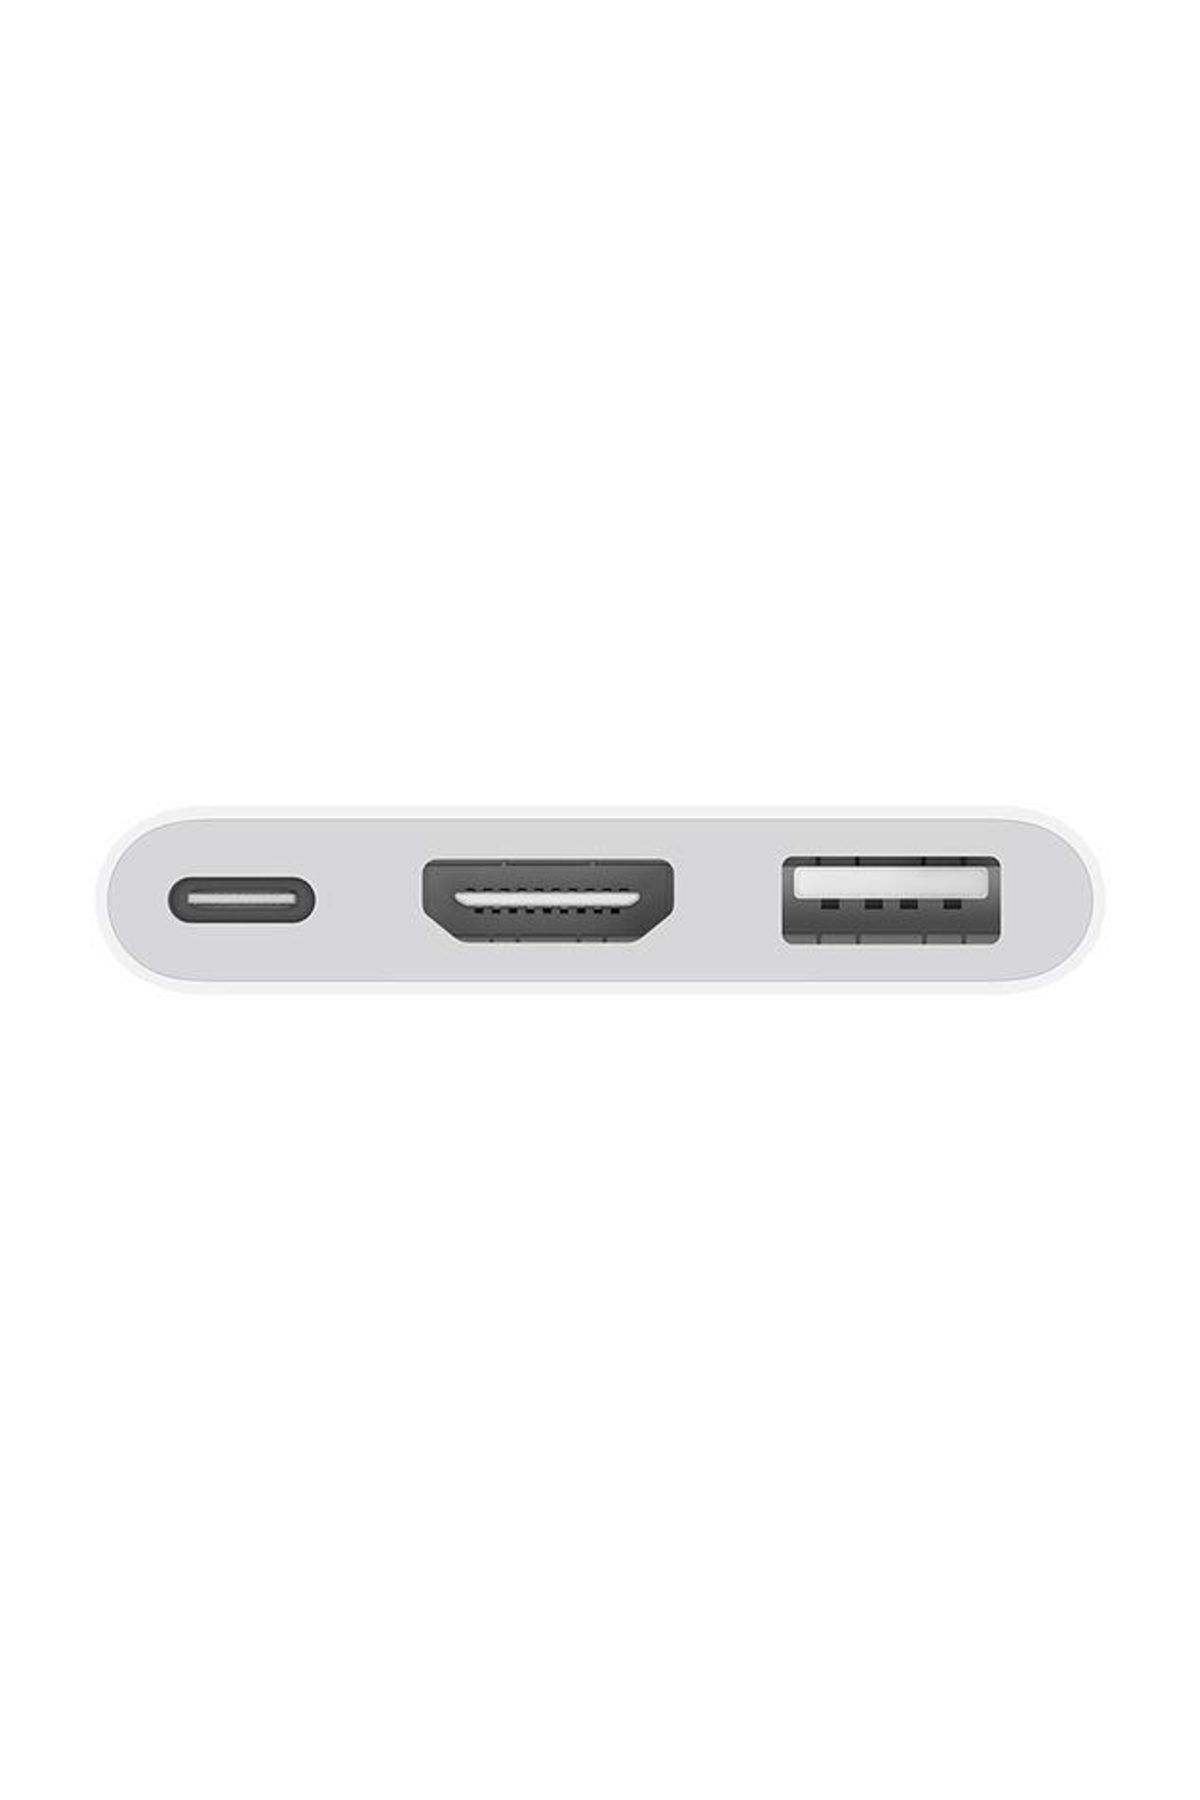 Apple USB-C Digital AV Multiport Adapter MUF82ZM/A